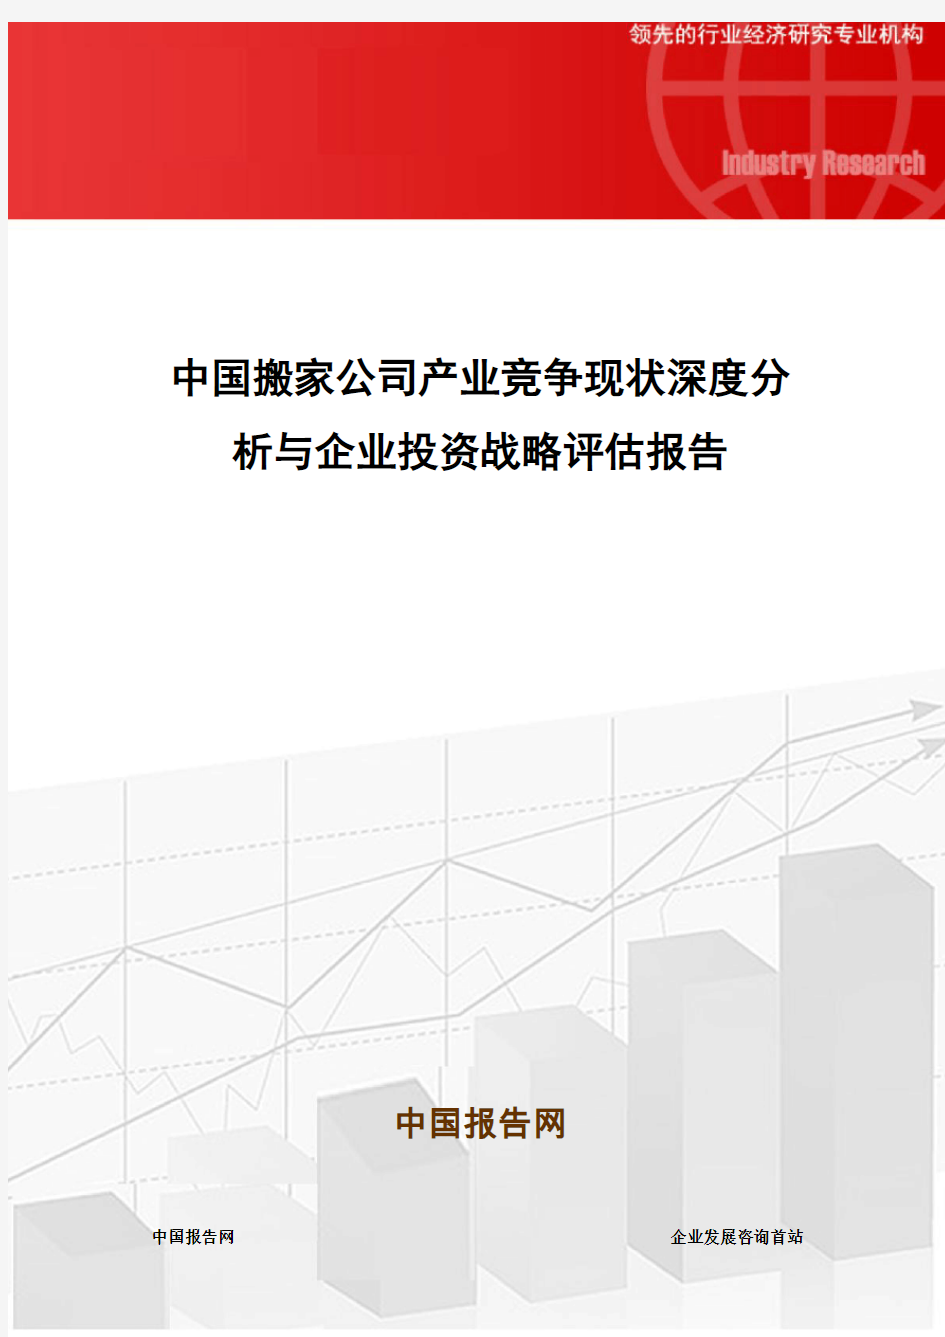 中国搬家公司产业竞争现状深度分析与企业投资战略评估报告